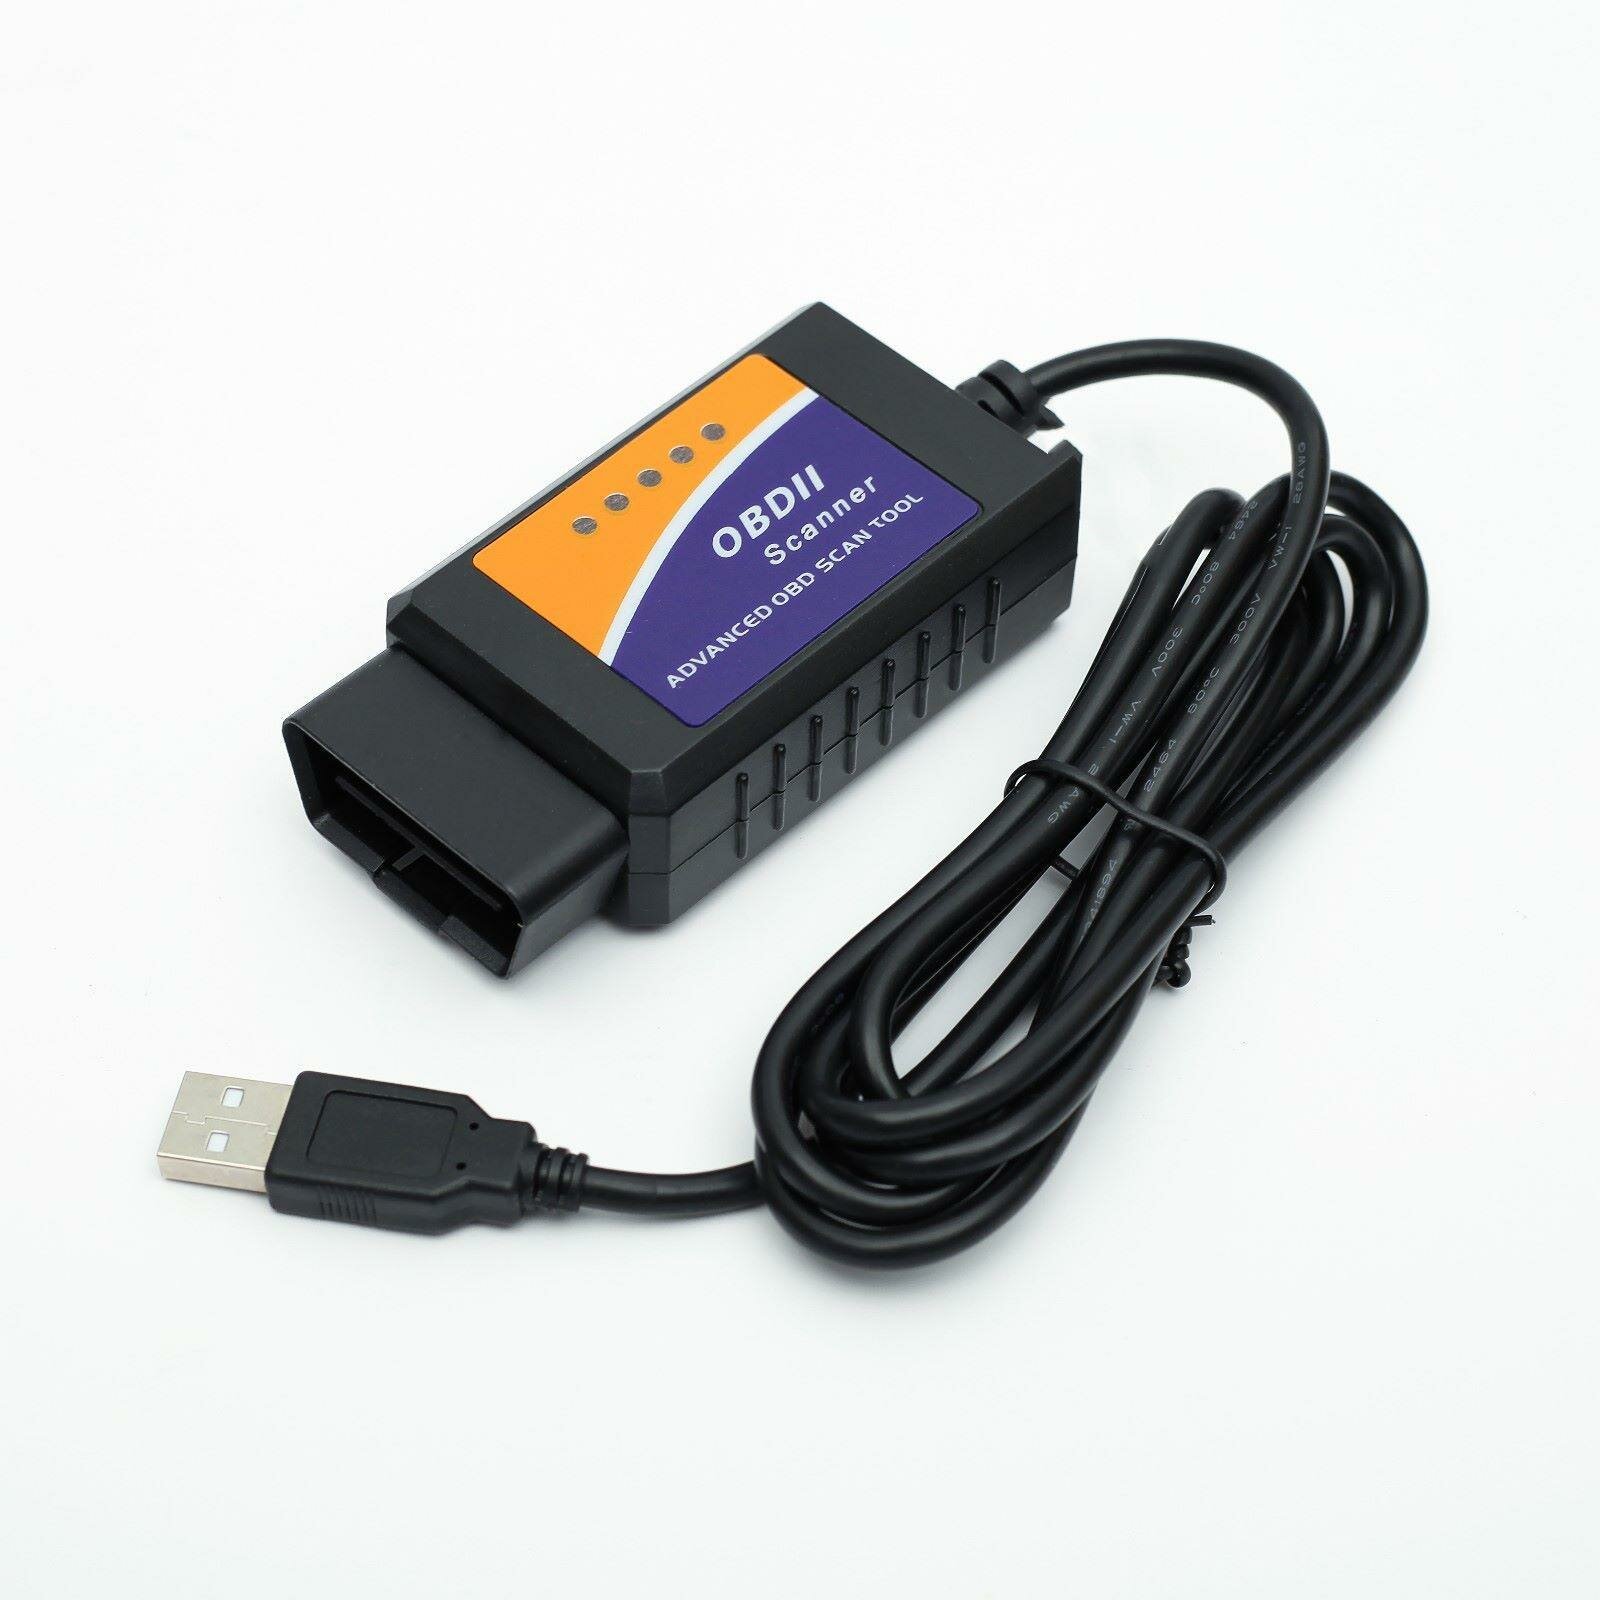 Адаптер для диагностики авто ELM327 OBD II USB провод 140 см версия 1.5